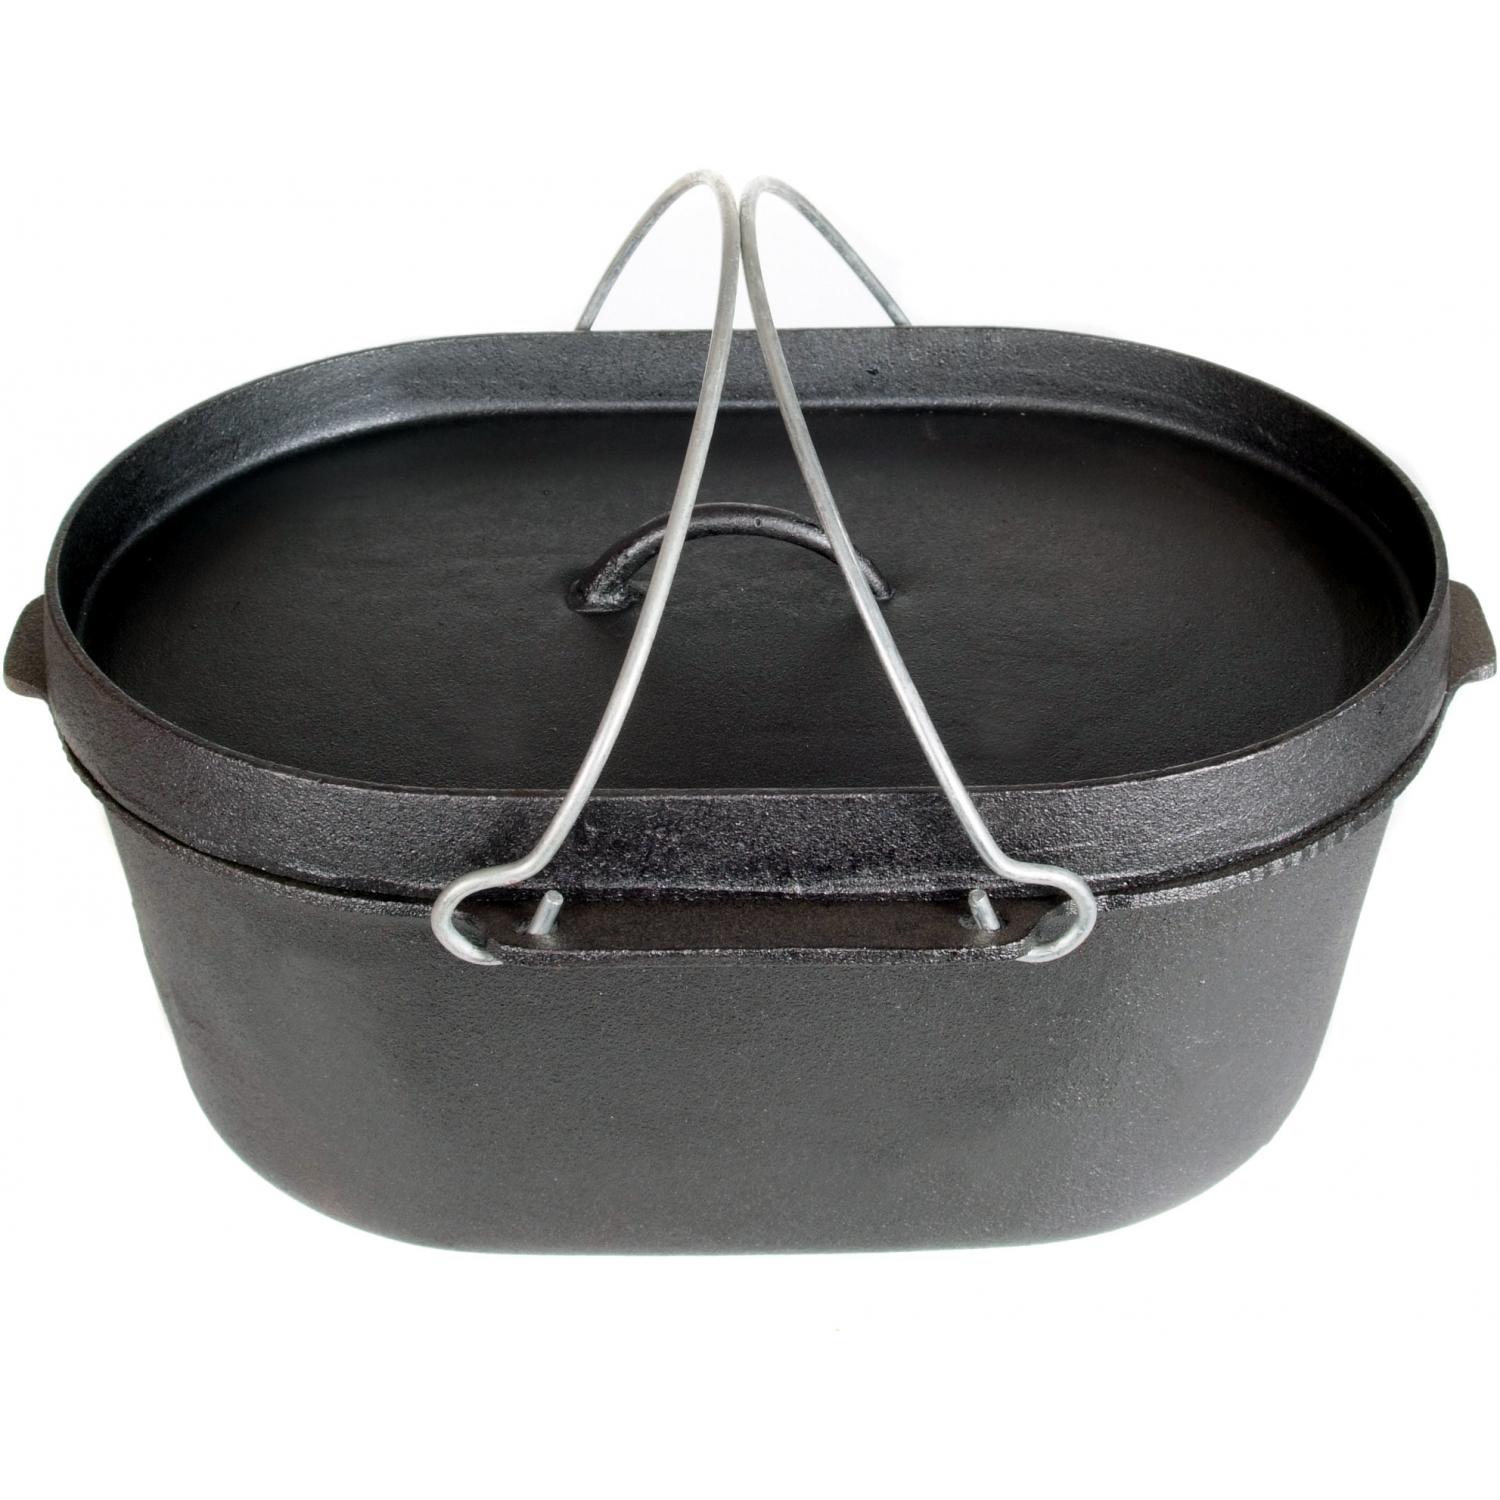 Oval Casserole Camp Pot - Cajun Classic Cookware ·